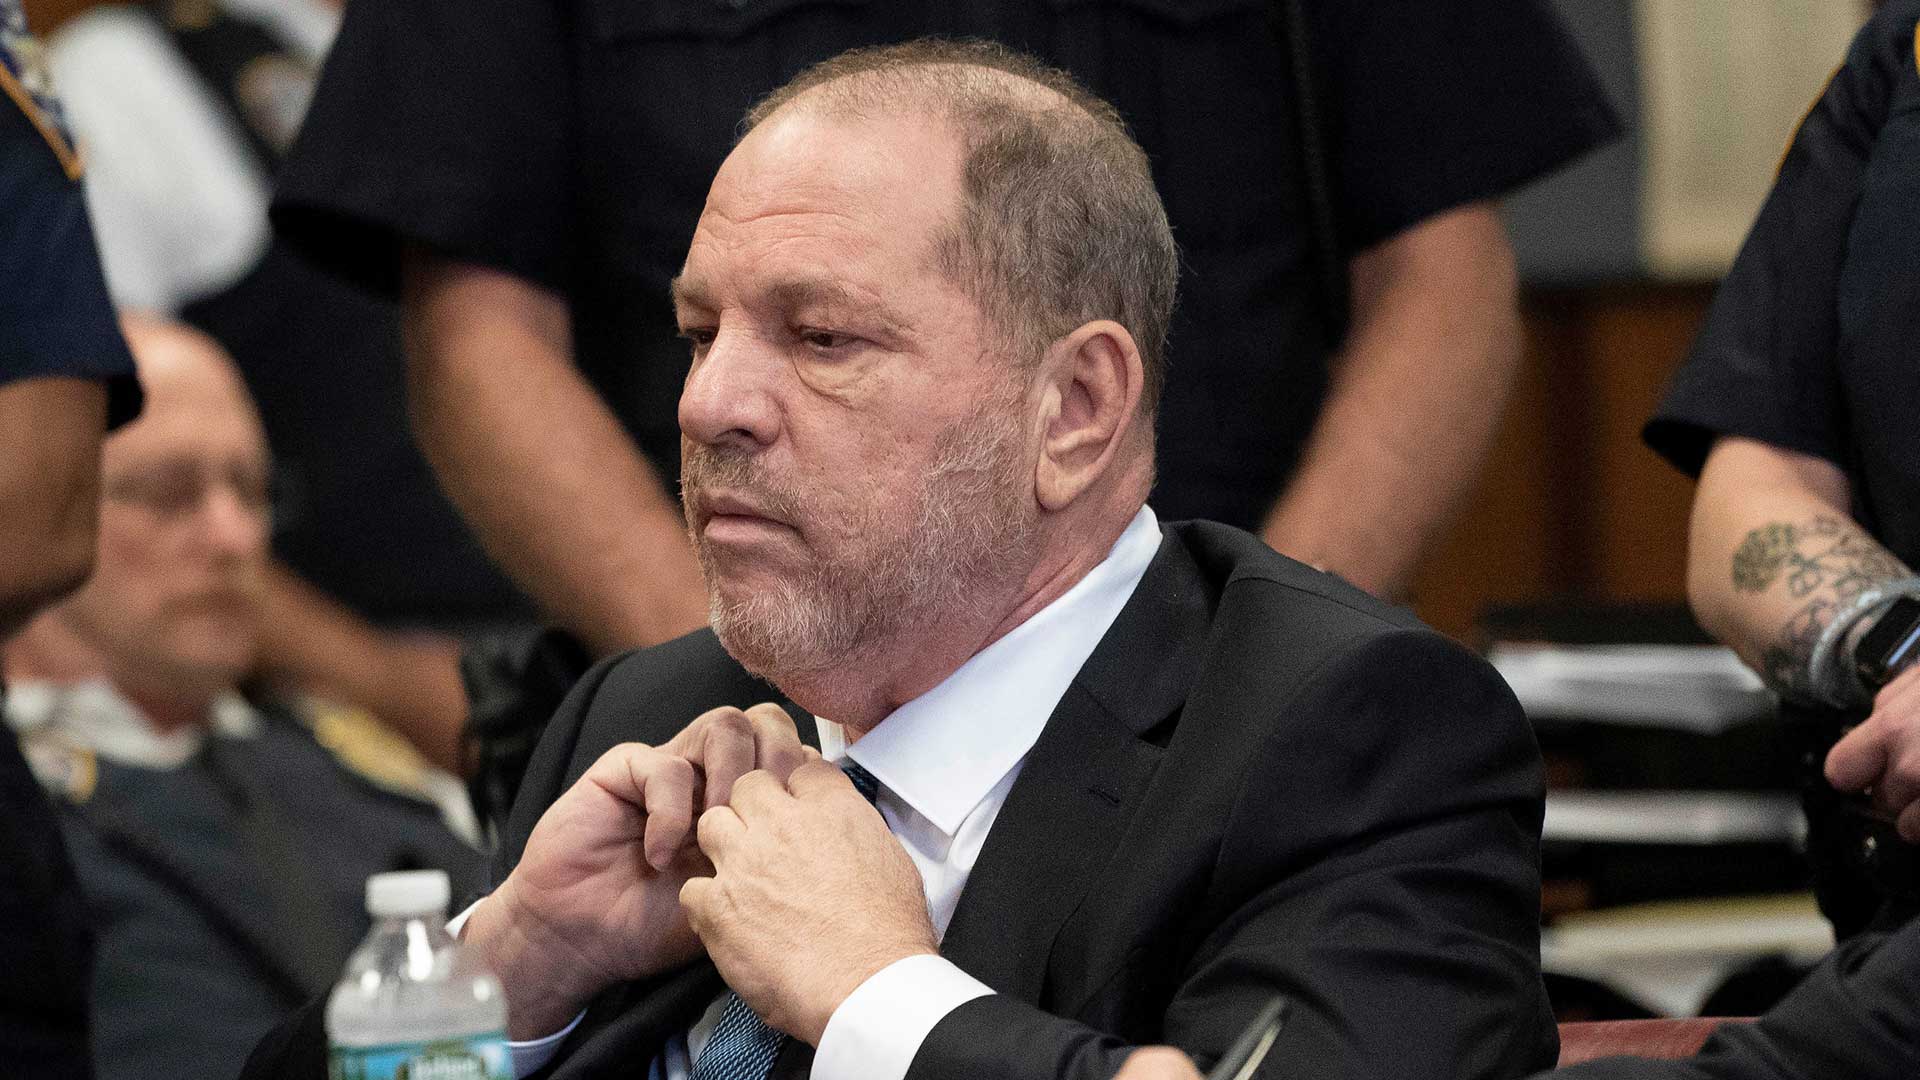 Queda anulado uno de los cargos contra Harvey Weinstein